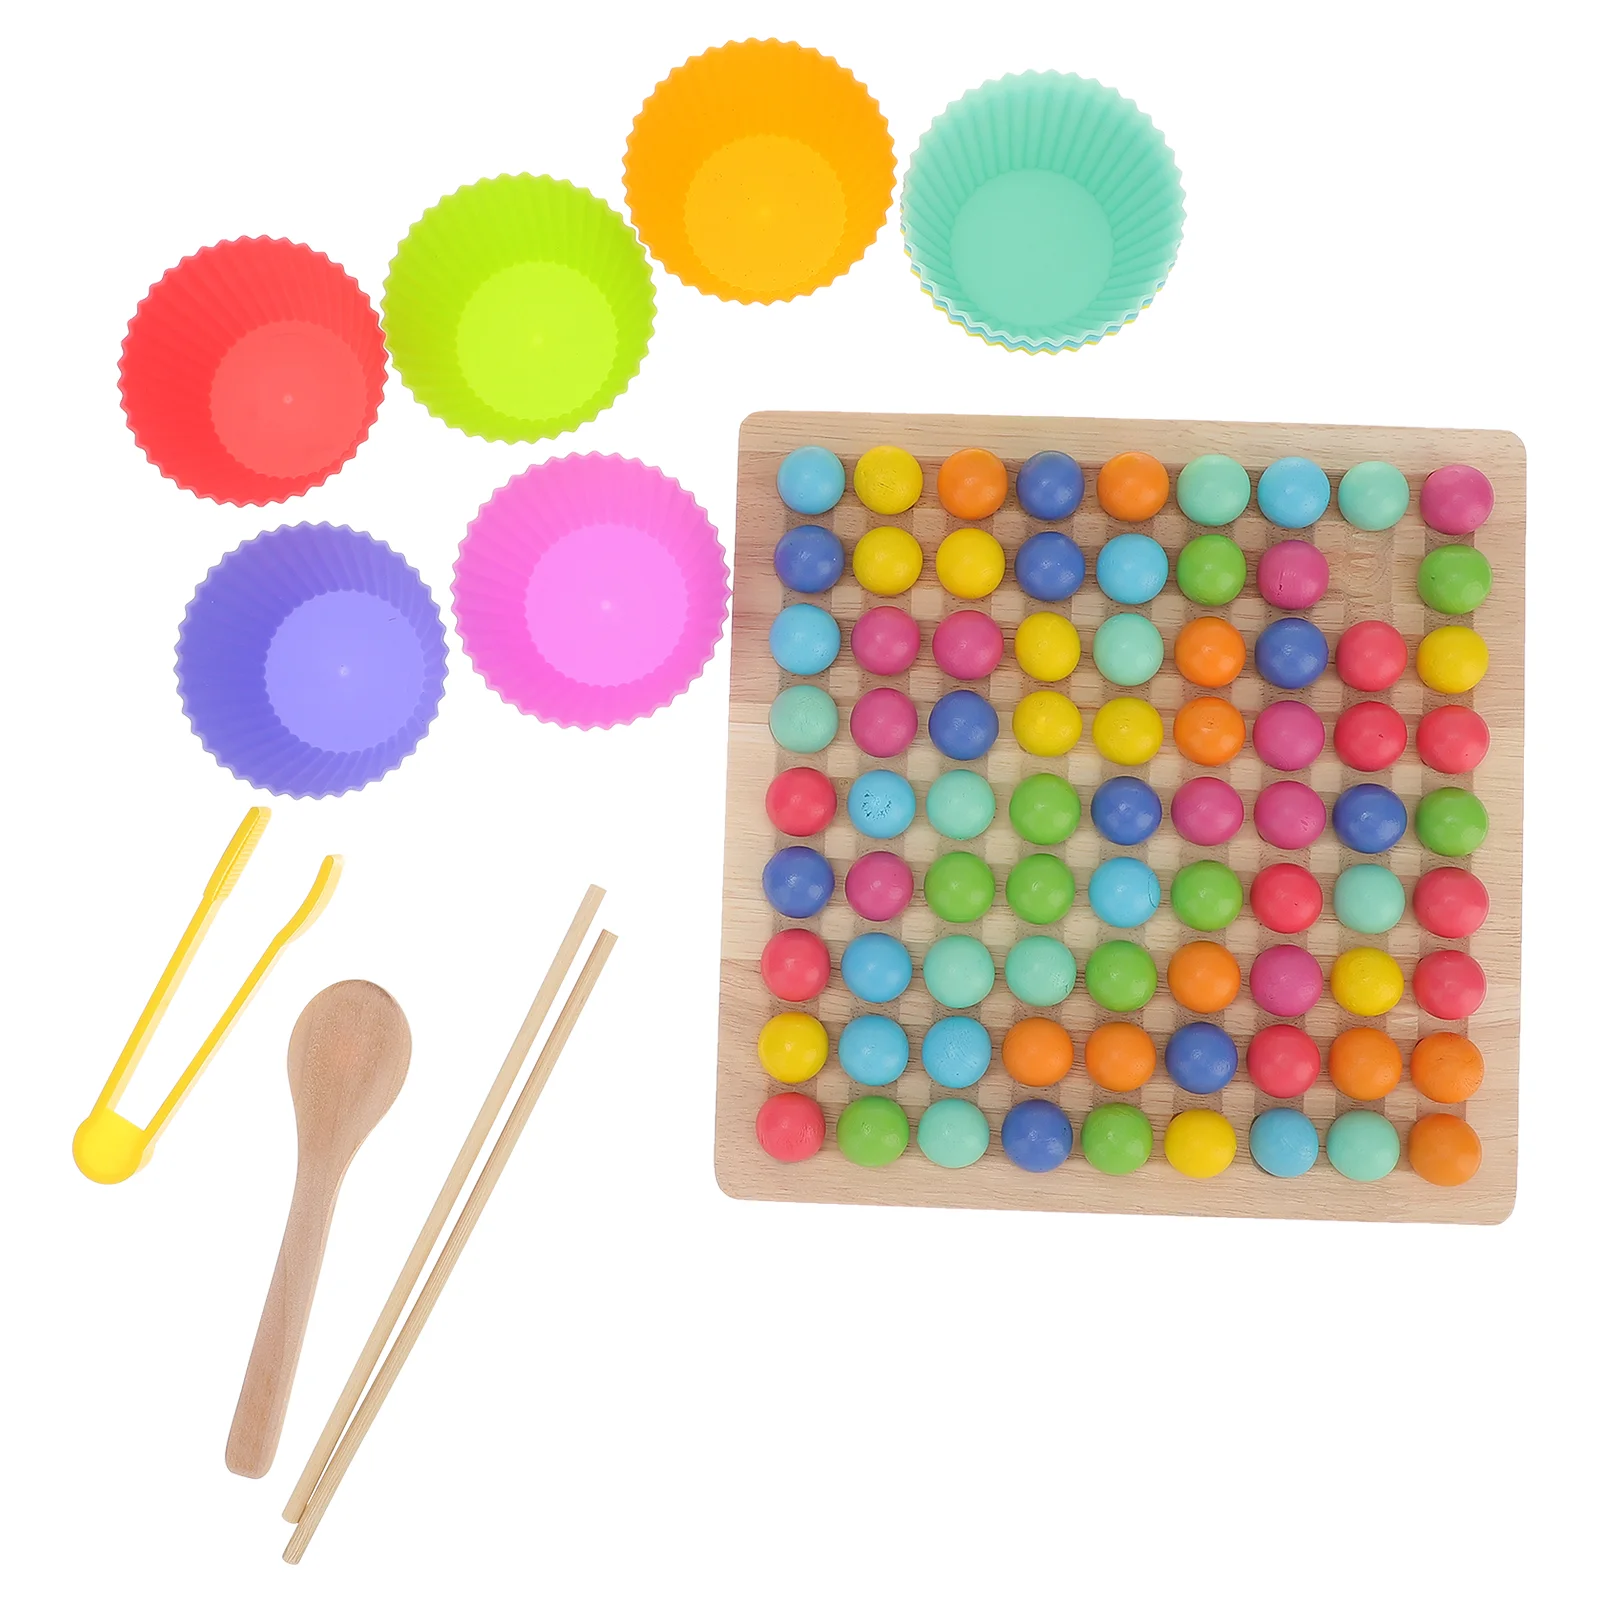 

Цветные шарики, подходящие к доске, Интерактивная деревянная шахматная игра, детская развивающая мультяшная детская игра